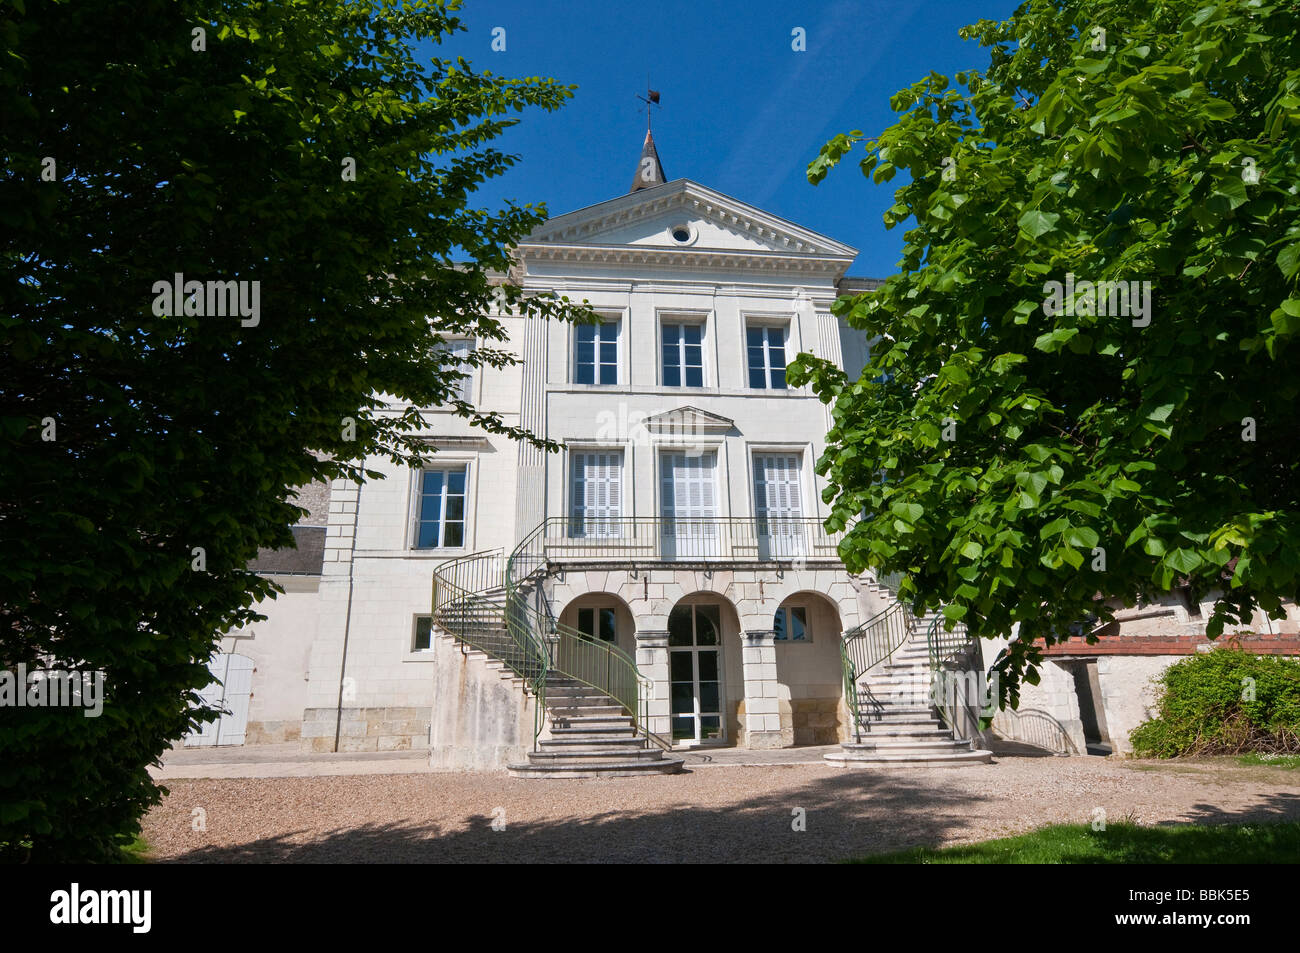 Town Hall / Mairie / Hotel de Ville - Preuilly-sur-Claise, Indre-et-Loire, France. Stock Photo